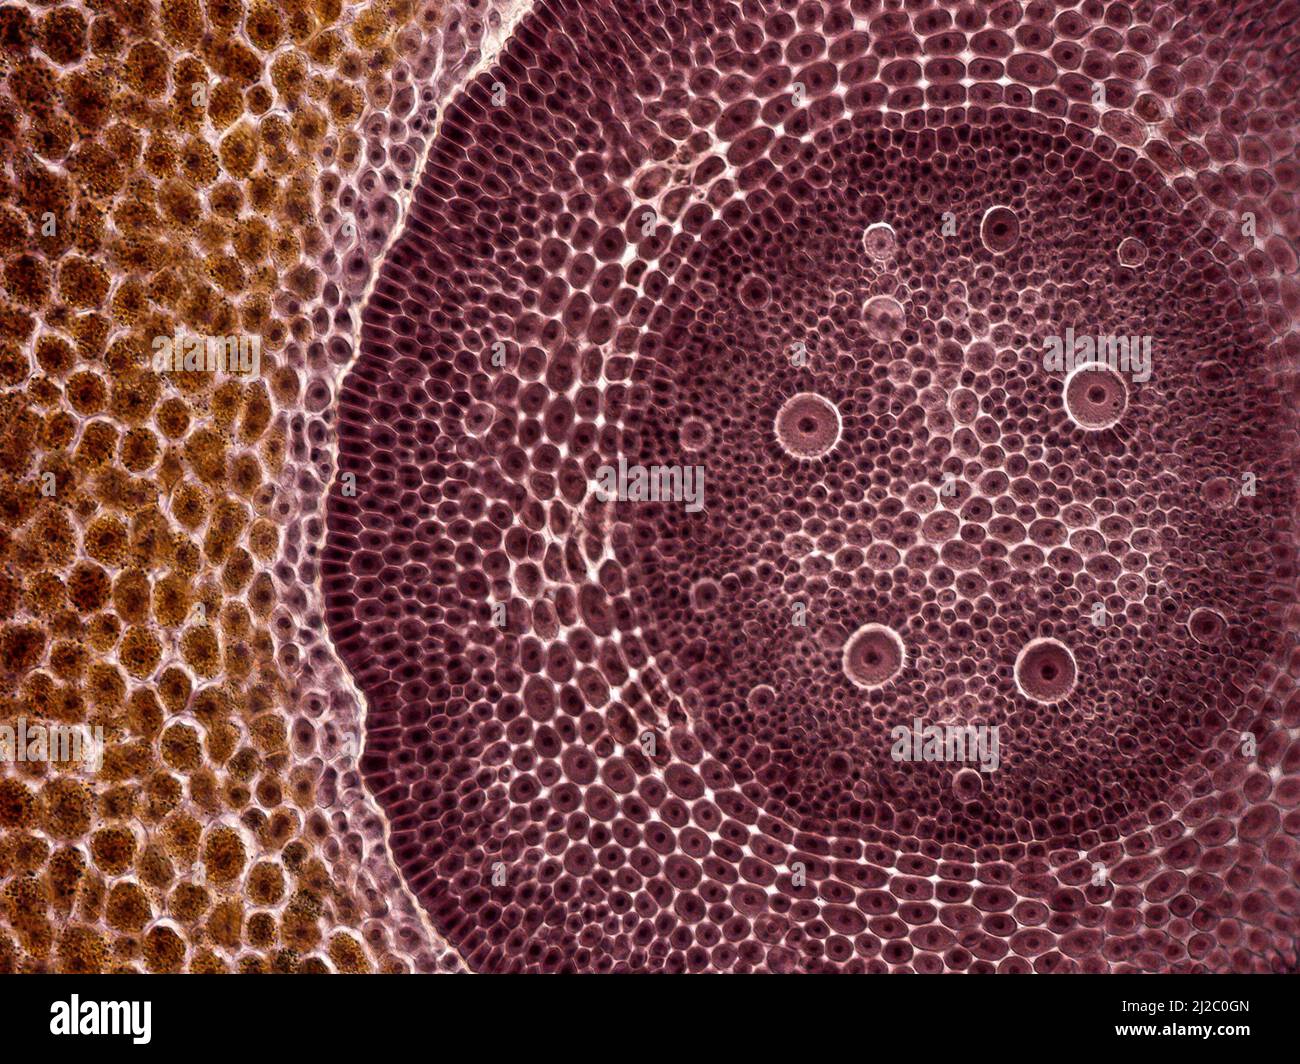 Grano di mais. Una foto interessante scattata al microscopio. Sezione trasversale attraverso la granella di mais (Zea mays). Foto Stock